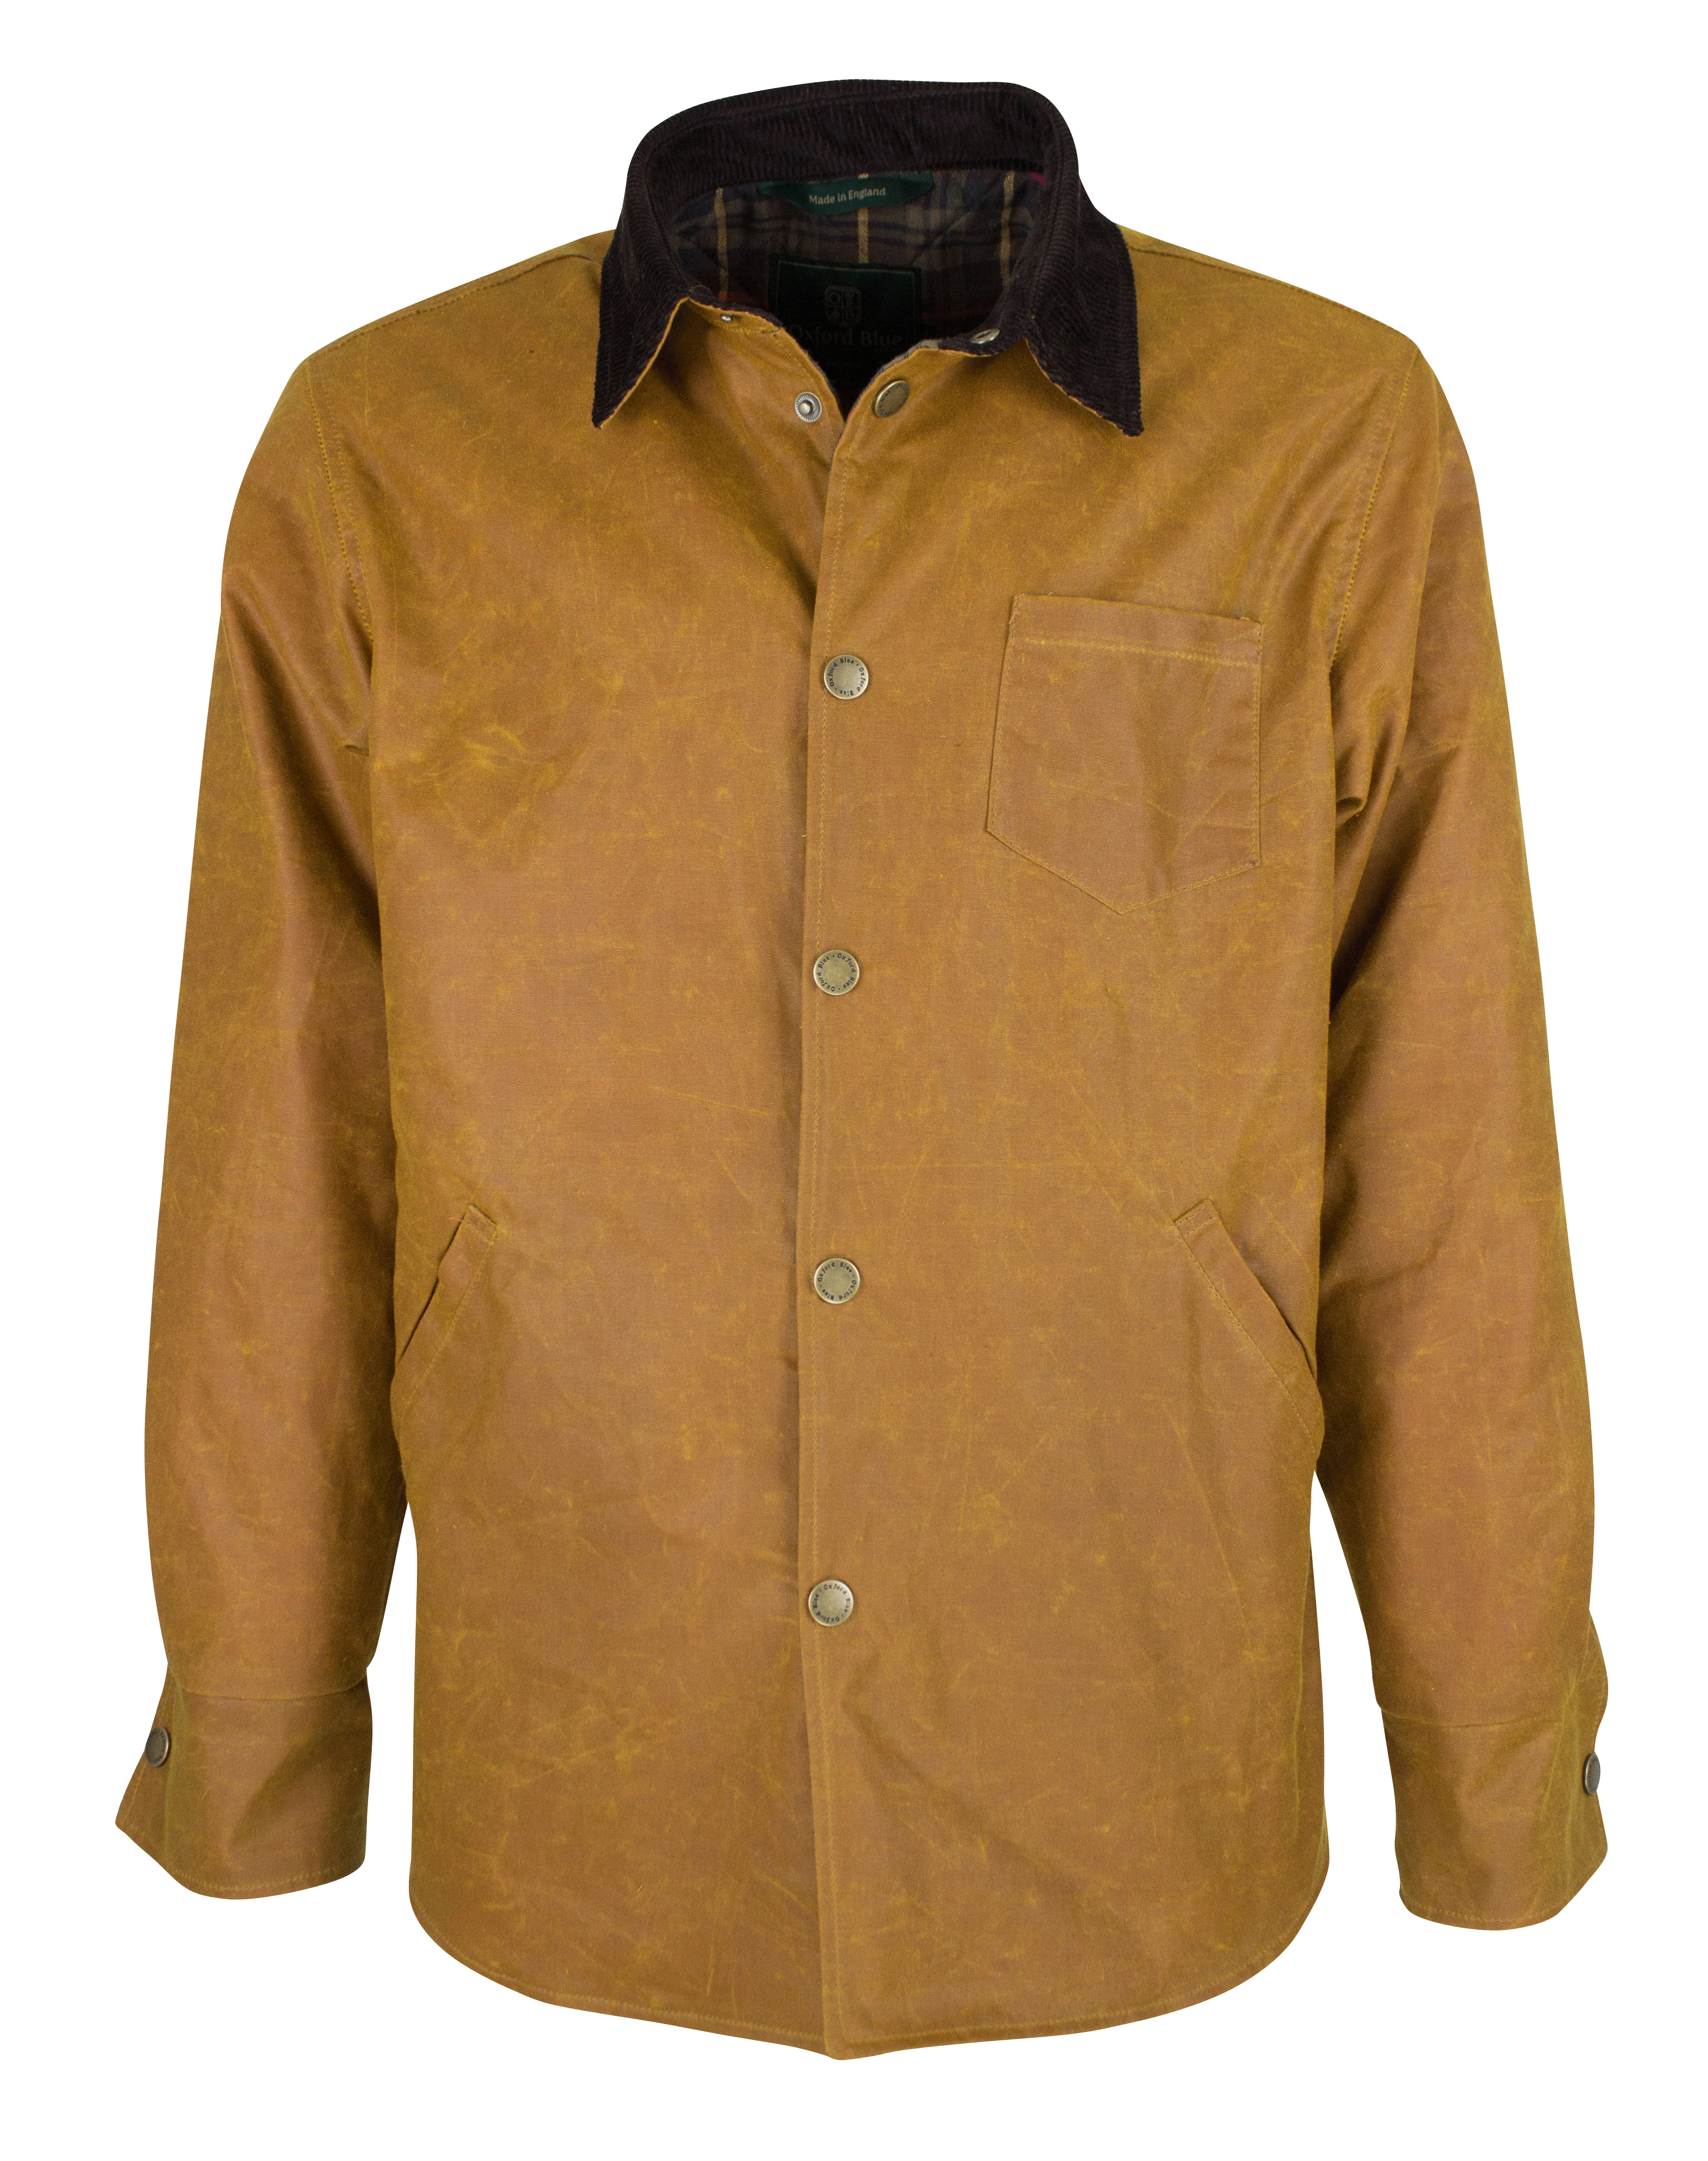 W26 - Men's Antique Wax Overshirt - GOLD